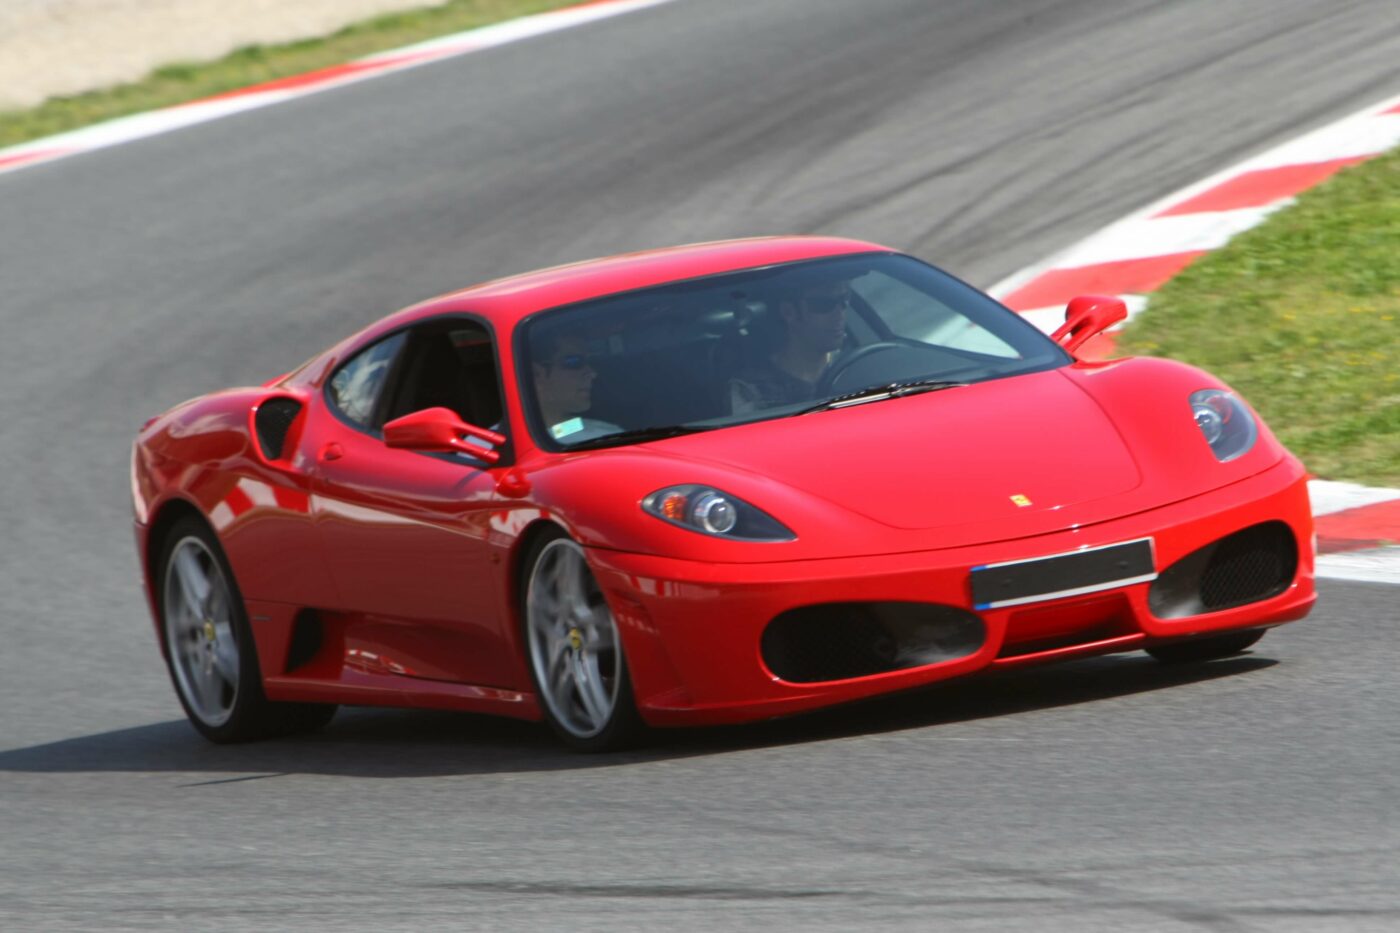 Regalos originales para los 18: Ferrari